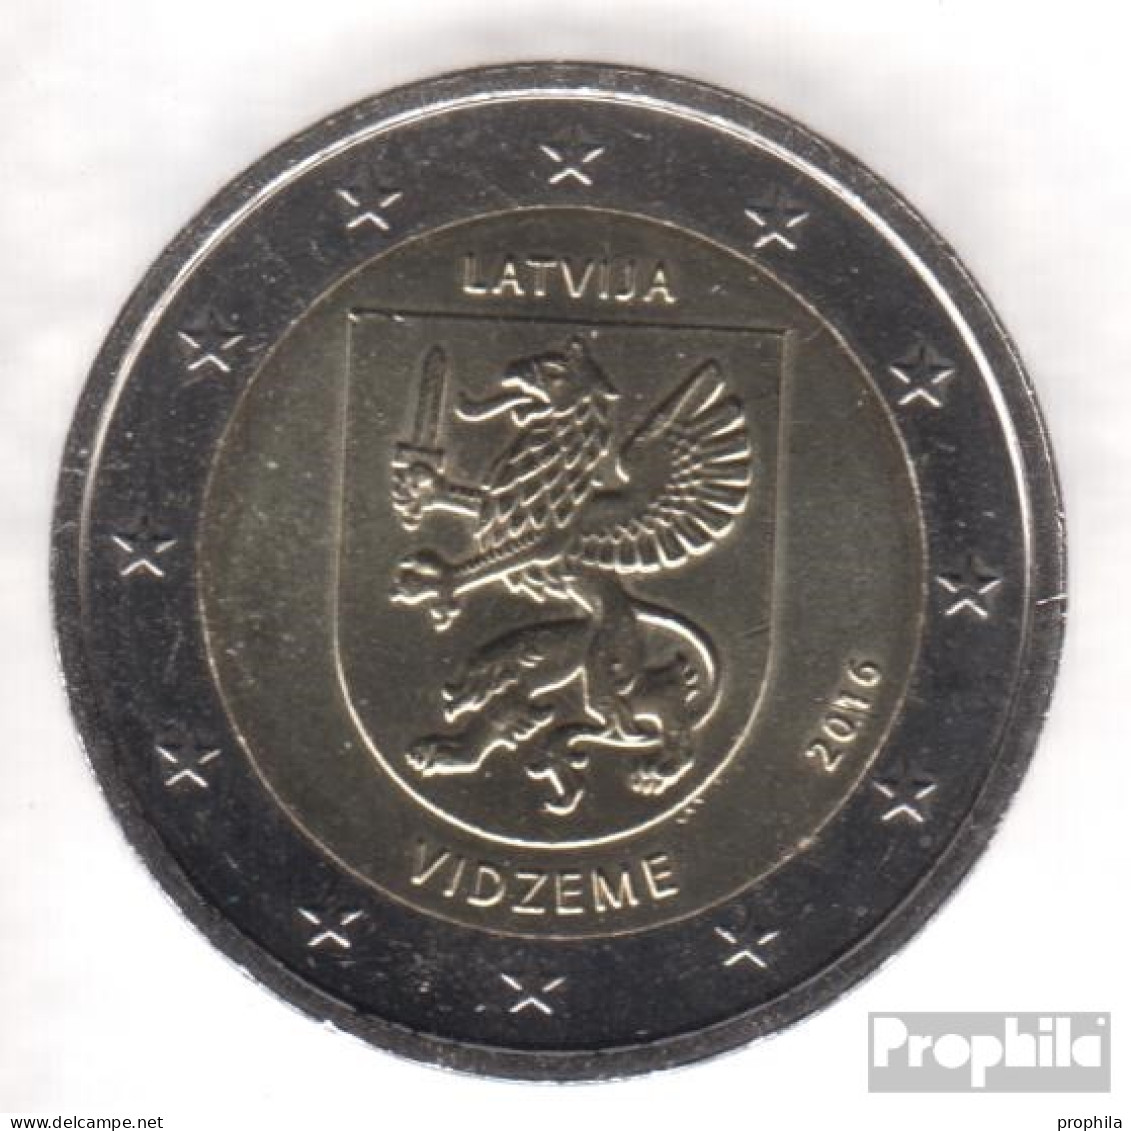 Lettland 2016 Stgl./unzirkuliert Auflage: 1 Mio. Stgl./unzirkuliert 2016 2 Euro Vidzeme - Letonia